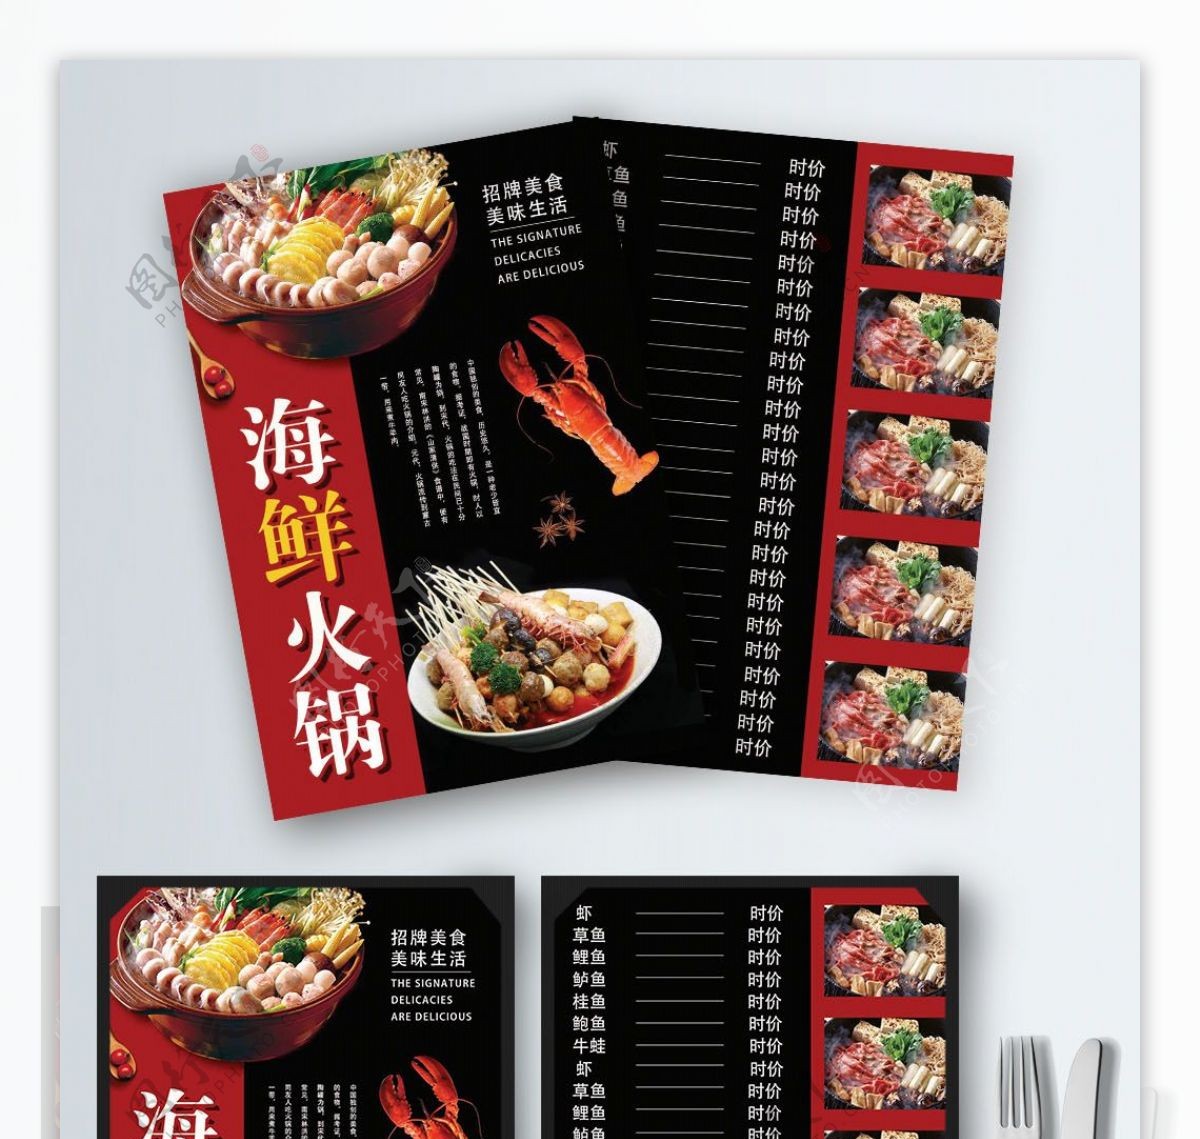 红色简约大气招牌海鲜火锅菜谱设计